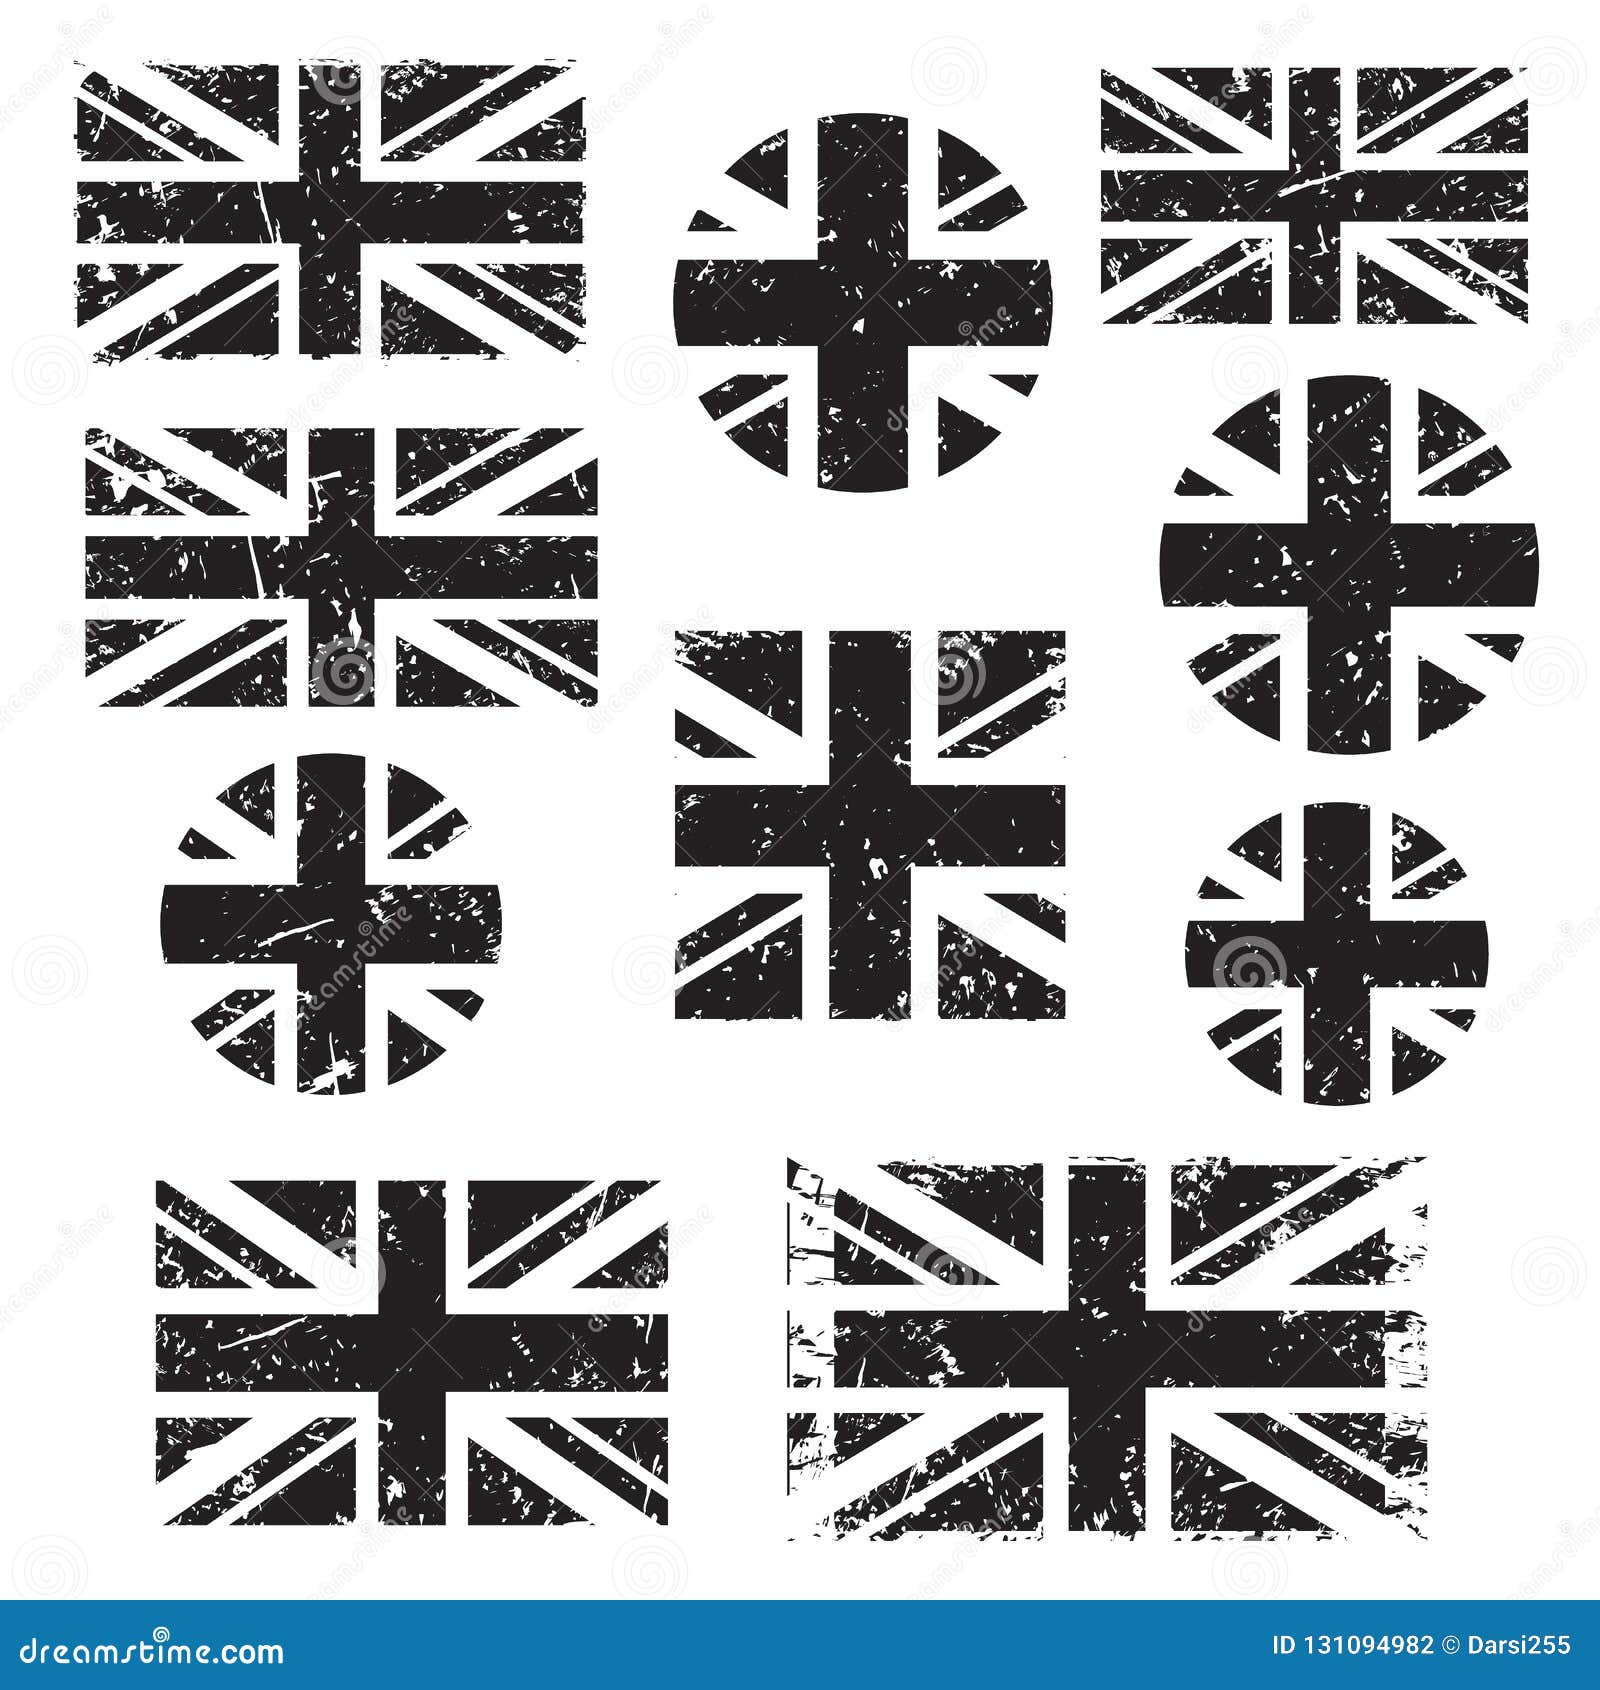 Bộ cờ cổ điển Anh Quốc Grunge, phông đen trên nền trắng … - Nếu bạn là fan của trò chơi cờ hoặc bạn muốn tìm kiếm một bức tranh đầy đủ truyền thống của Anh Quốc, bộ cờ cổ điển Anh Quốc Grunge là sự lựa chọn hoàn hảo. Hình ảnh với phông đen trên nền trắng sẽ mang đến cho bạn không gian thú vị để giải trí và thư giãn cùng bạn bè và gia đình.